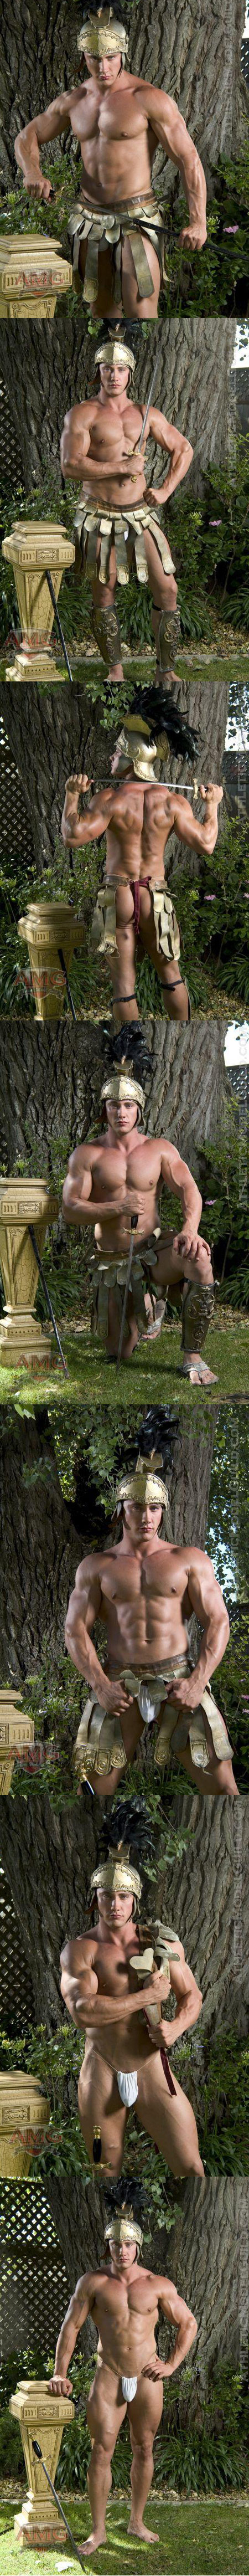 Jason Adonis Goes Gladiator!